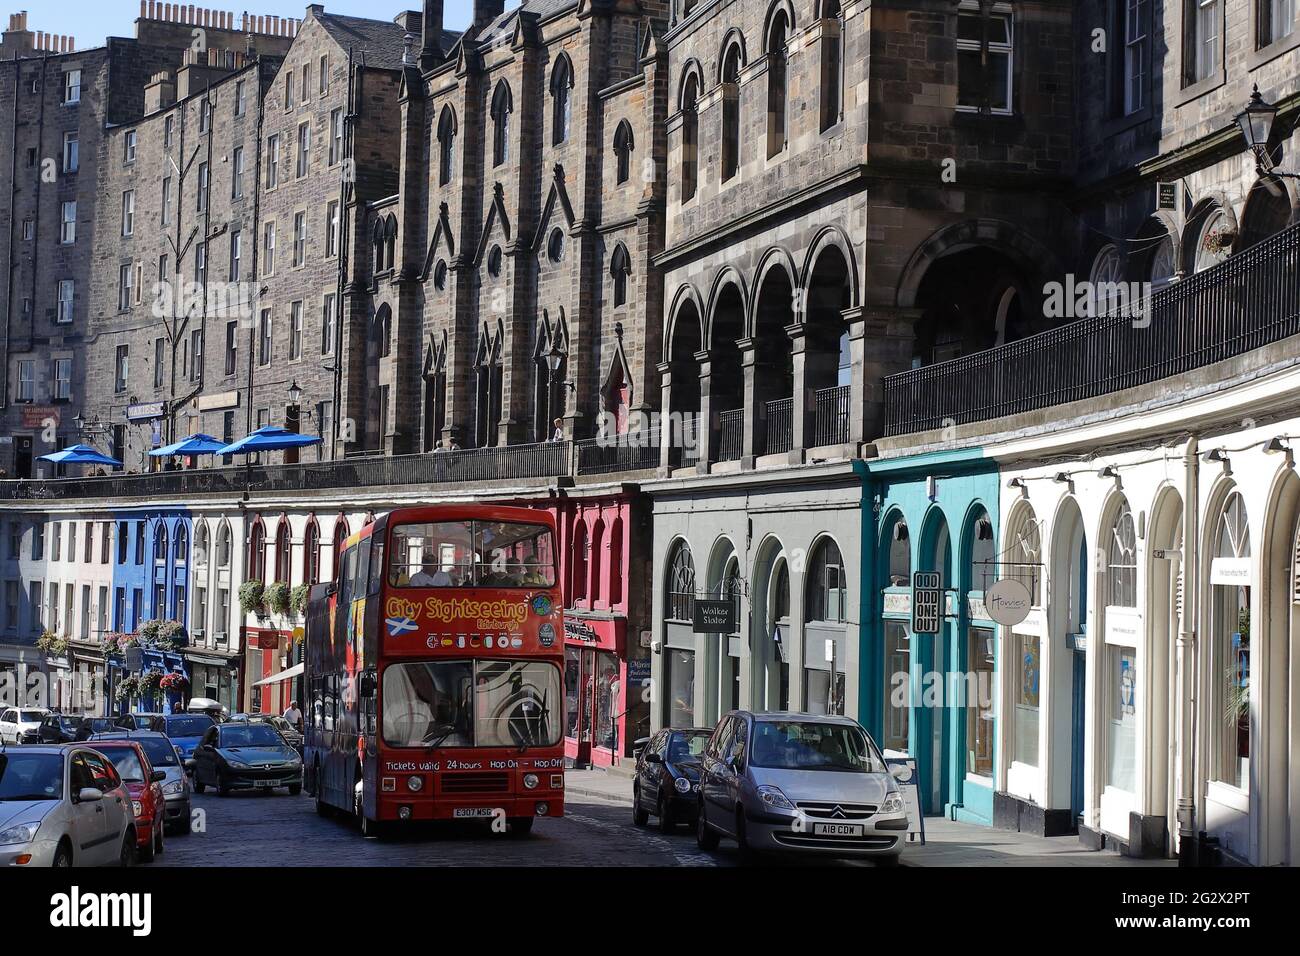 street view with bus, Victoria Street, Old Town, Edinburgh, Scotland Stock Photo